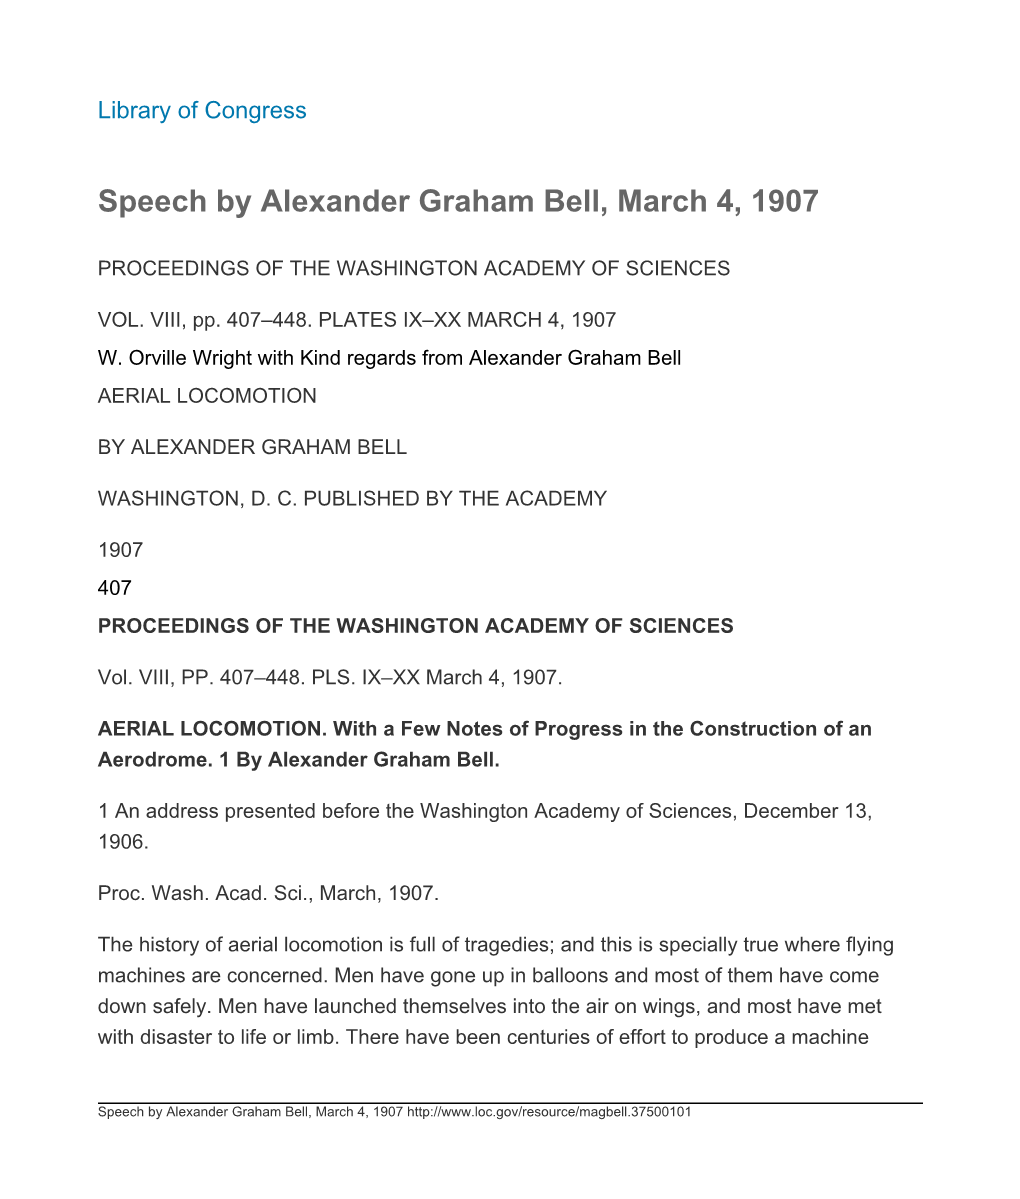 Speech by Alexander Graham Bell, March 4, 1907